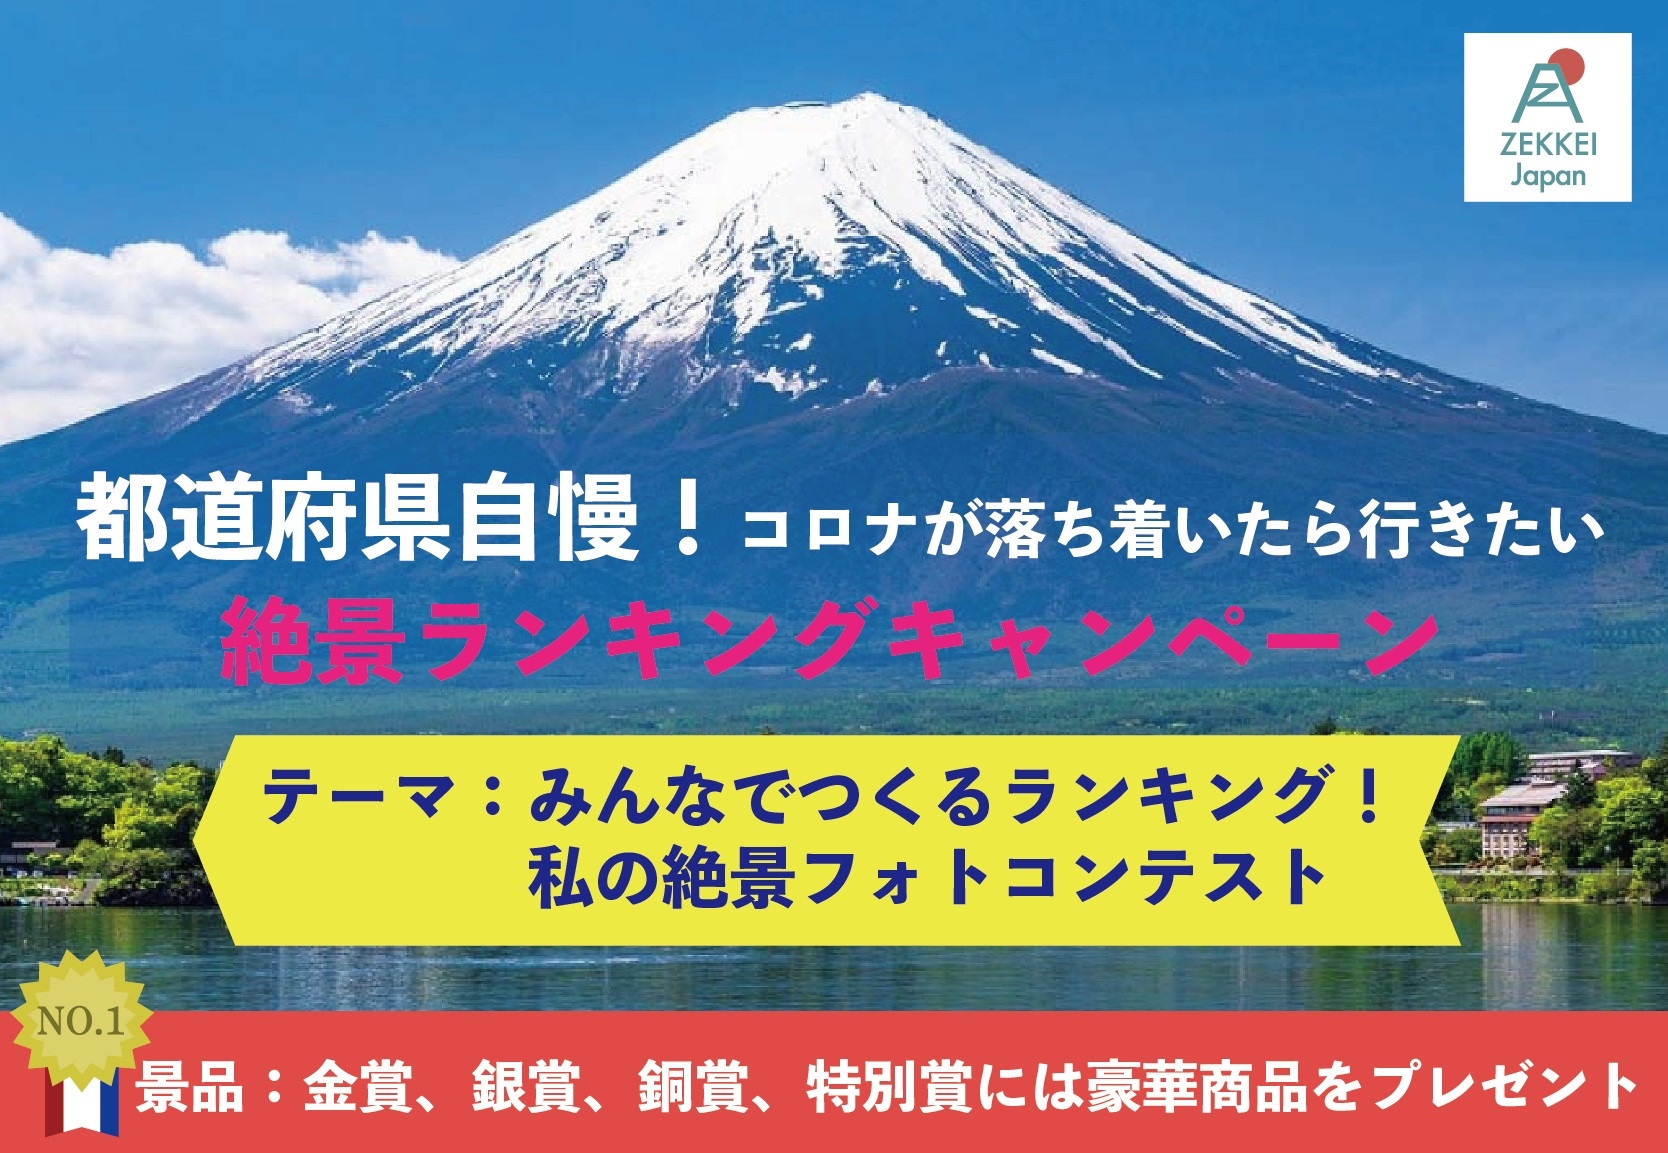 【ZEKKEI Japanフォトコンテスト開催のお知らせ】開催日＜開始：2020年 8/1（土）　締切：2020年 9/13（日）＞